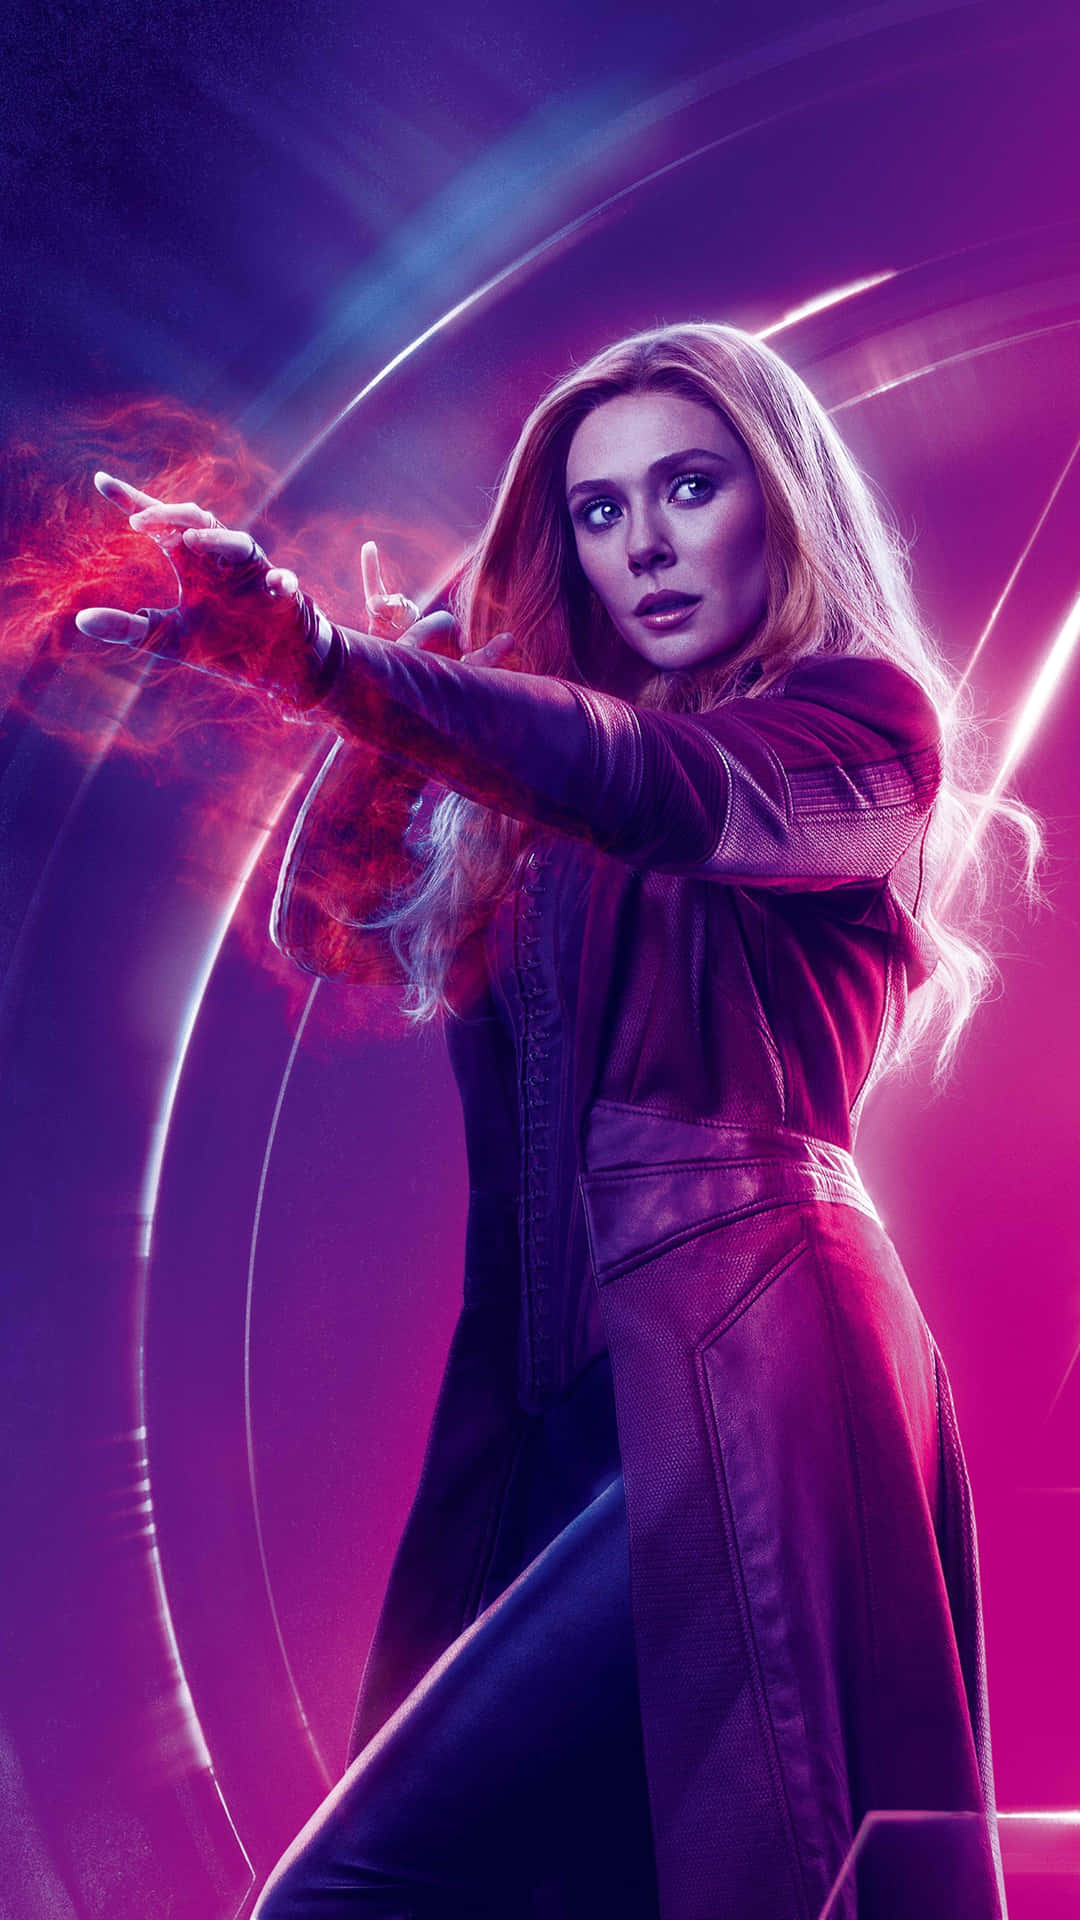 Scarlet Witch ses i Marvel Cinematic Universe i 8k-opløsning. Wallpaper